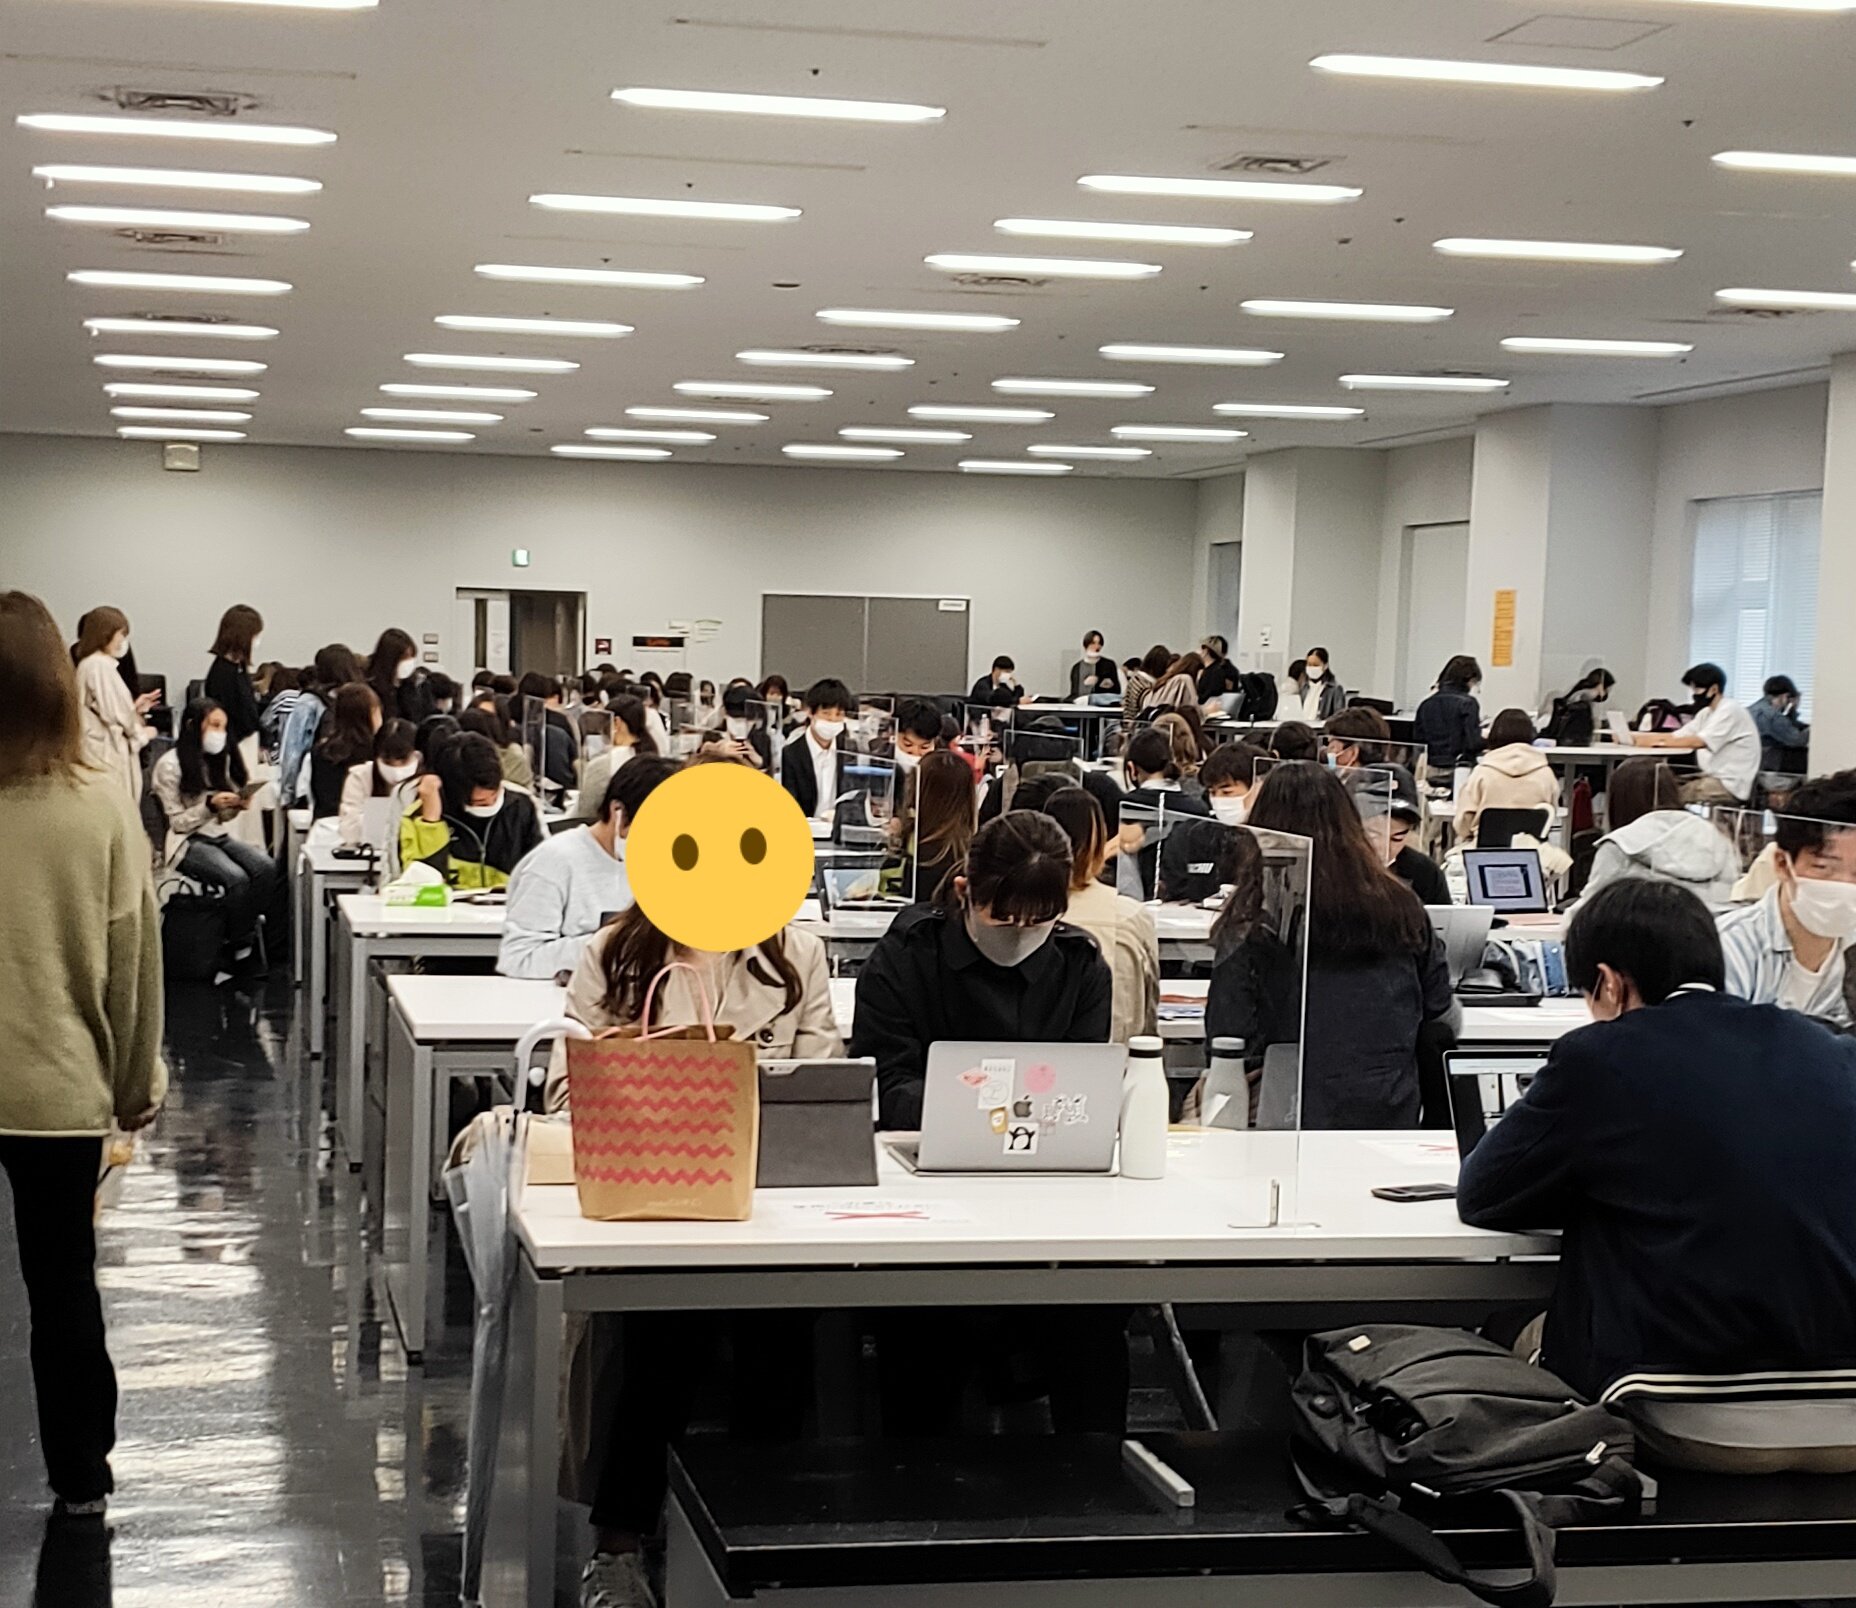 衝撃 気が付いたら密 オンライン授業中の早稲田大学の様子が話題 つーつーおーる 早稲田を面白くするwebメディア